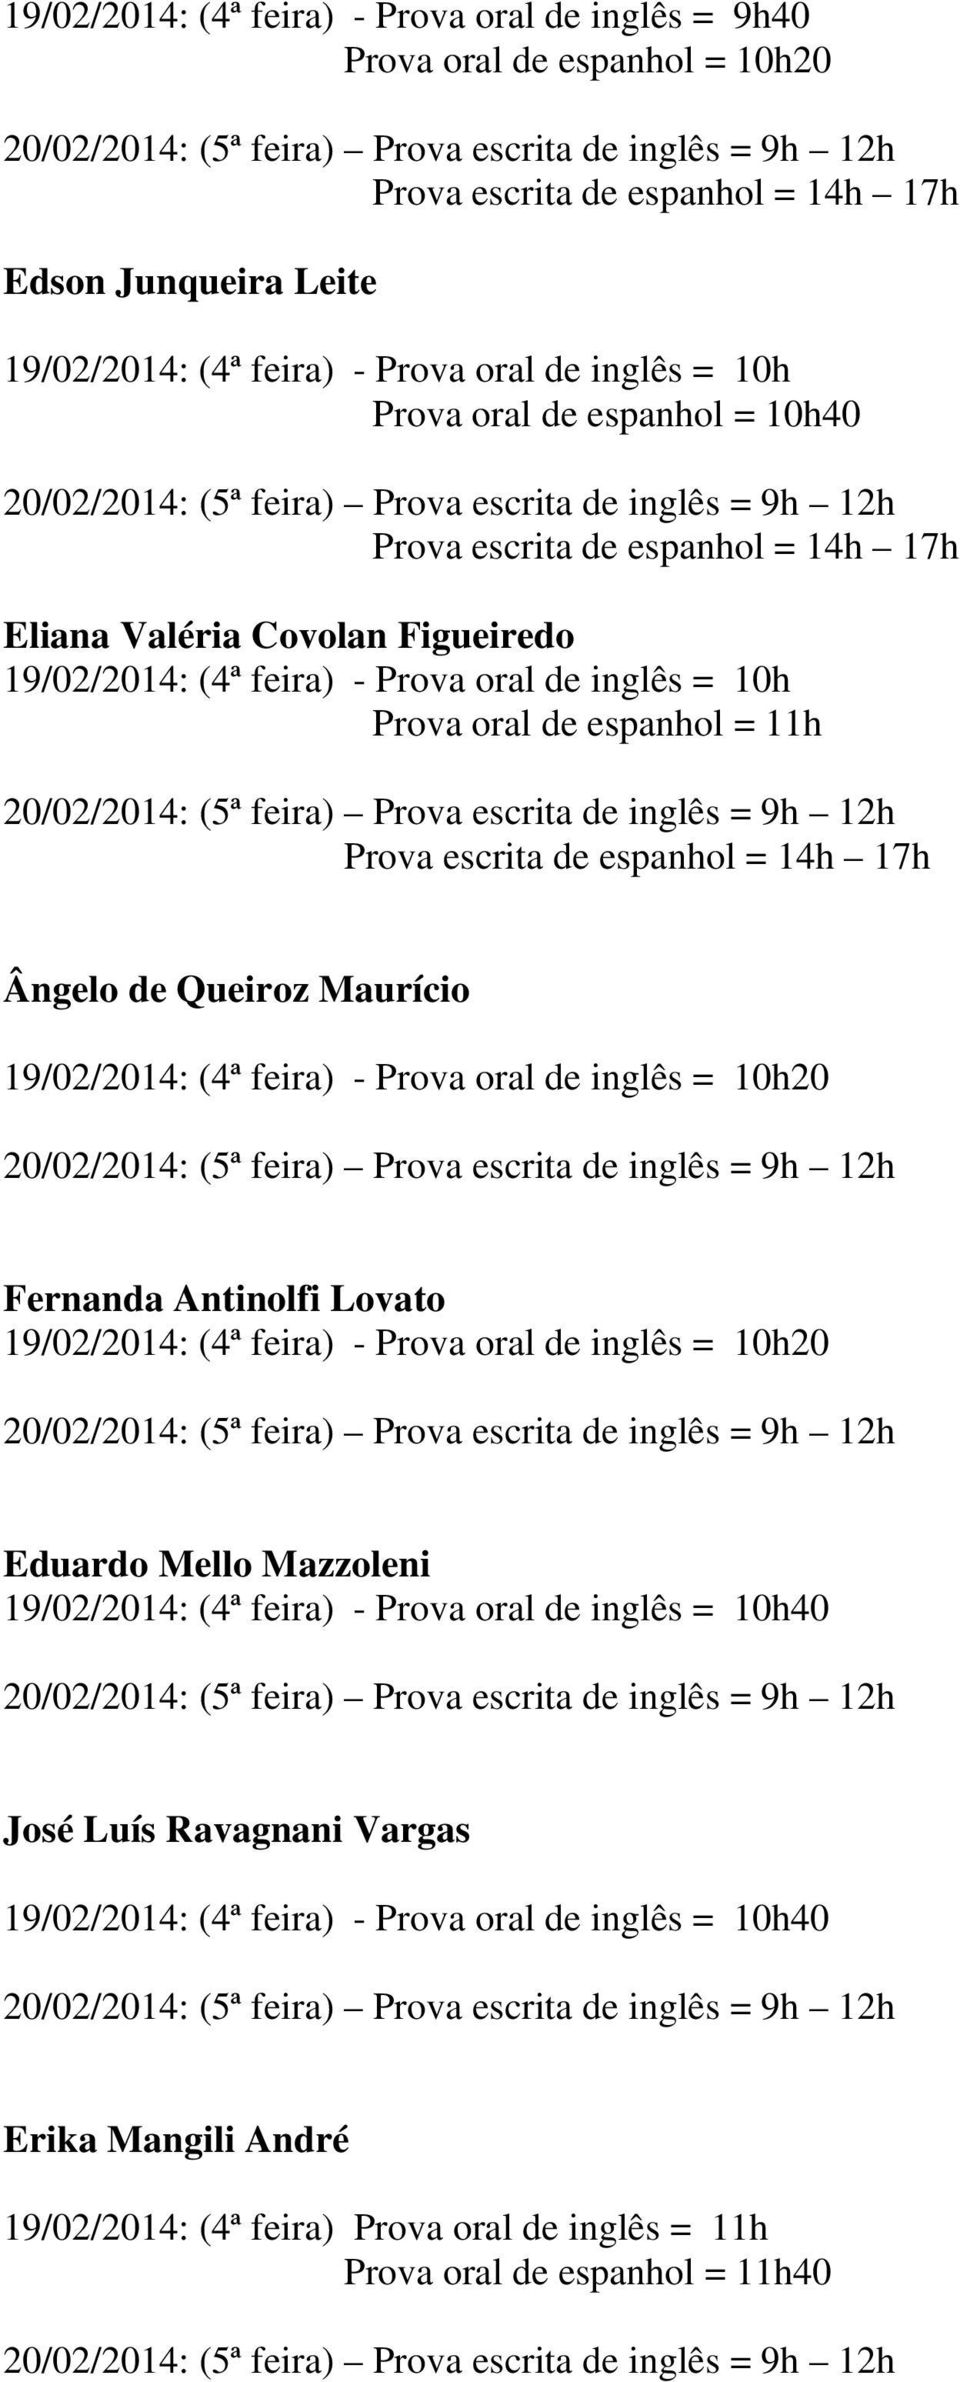 oral de inglês = 10h20 Fernanda Antinolfi Lovato 19/02/2014: (4ª feira) - Prova oral de inglês = 10h20 Eduardo Mello Mazzoleni 19/02/2014: (4ª feira) - Prova oral de inglês = 10h40